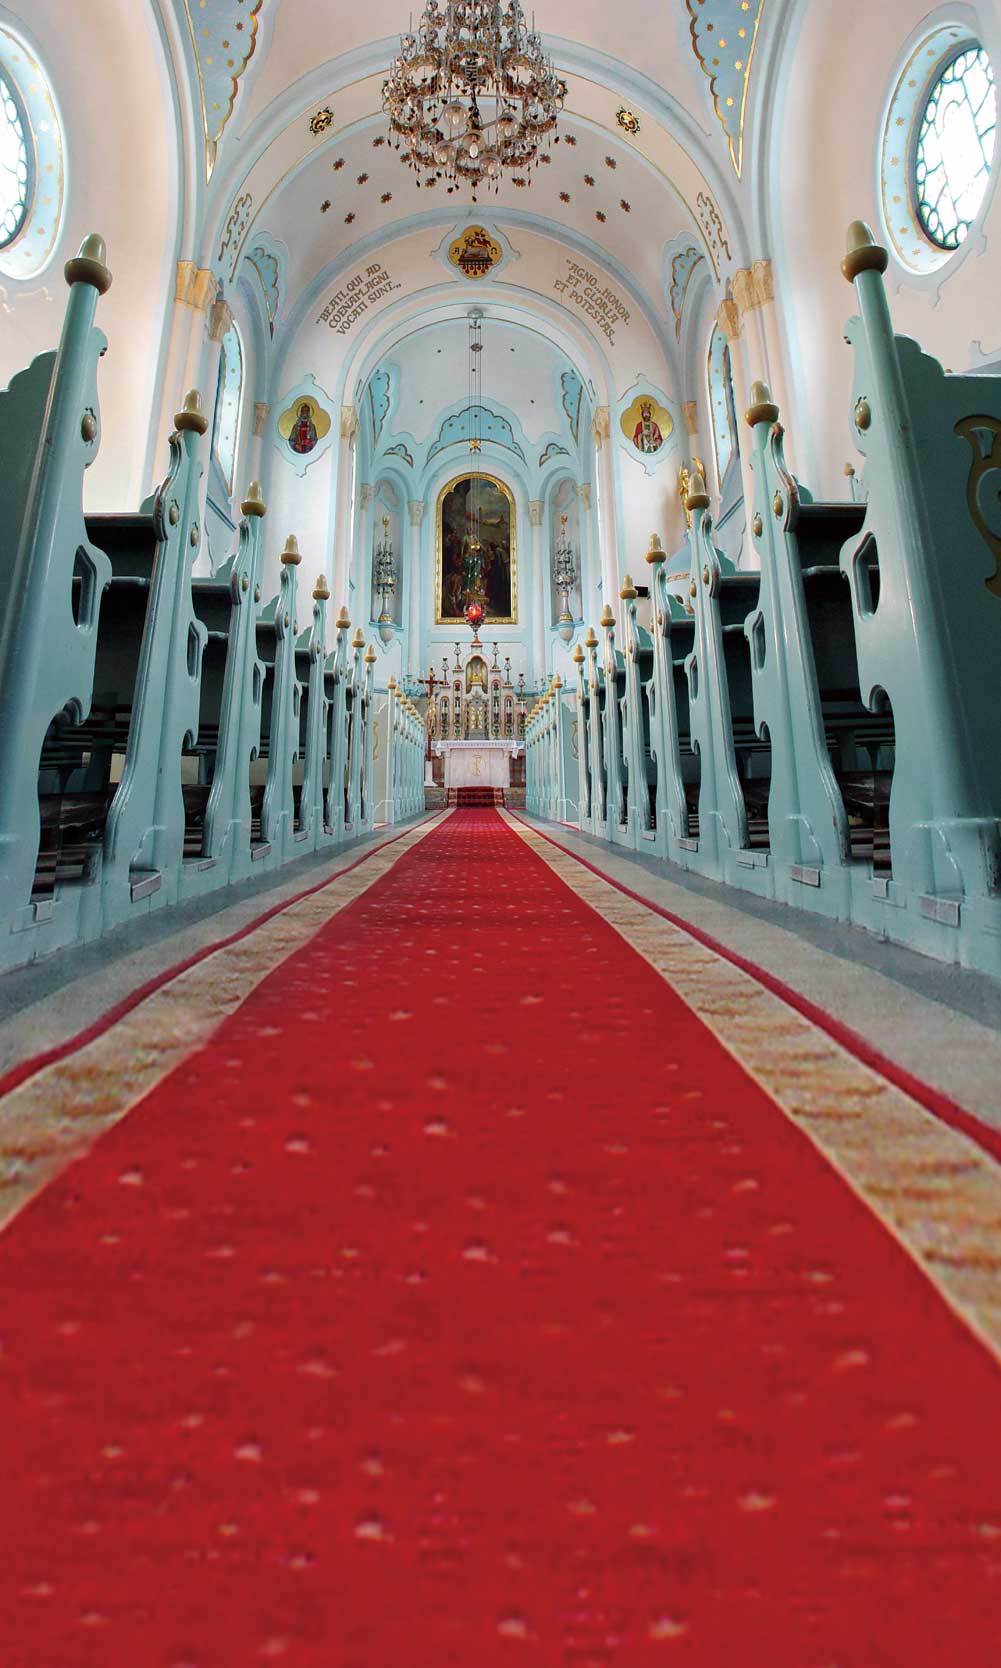 Katebackdrop：Kate Red carpet wedding church backdrop